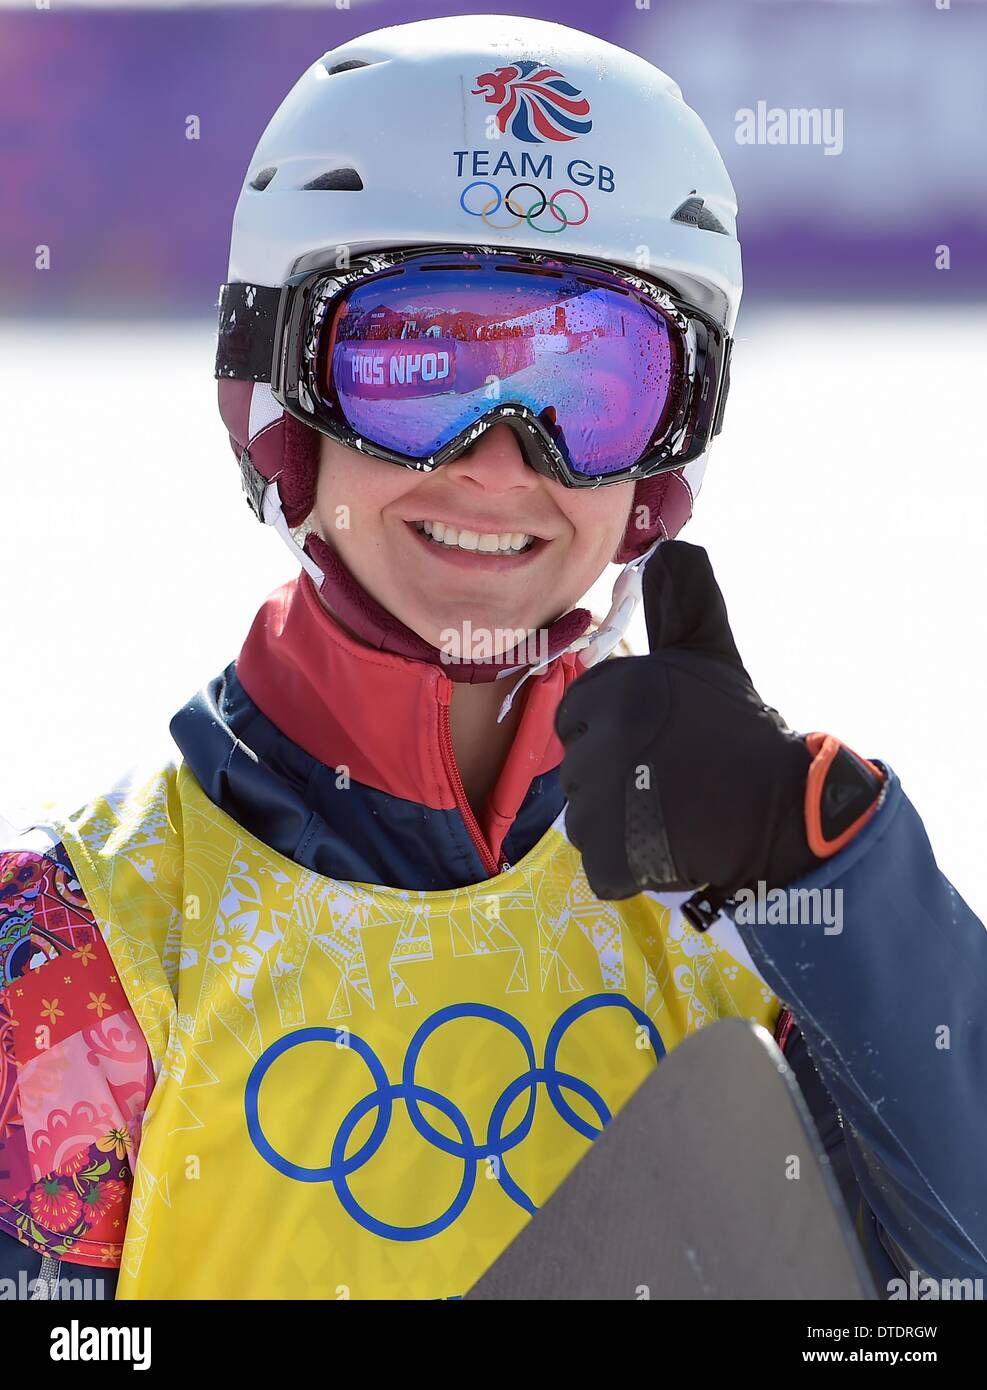 Bitte kümmert sich Zoe Gillings (GBR) für das Halbfinale qualifizieren. Womens Snowbboard Cross - Rosa Khutor Extreme Park - Sotschi - Russland - 16.02.2014 Stockfoto